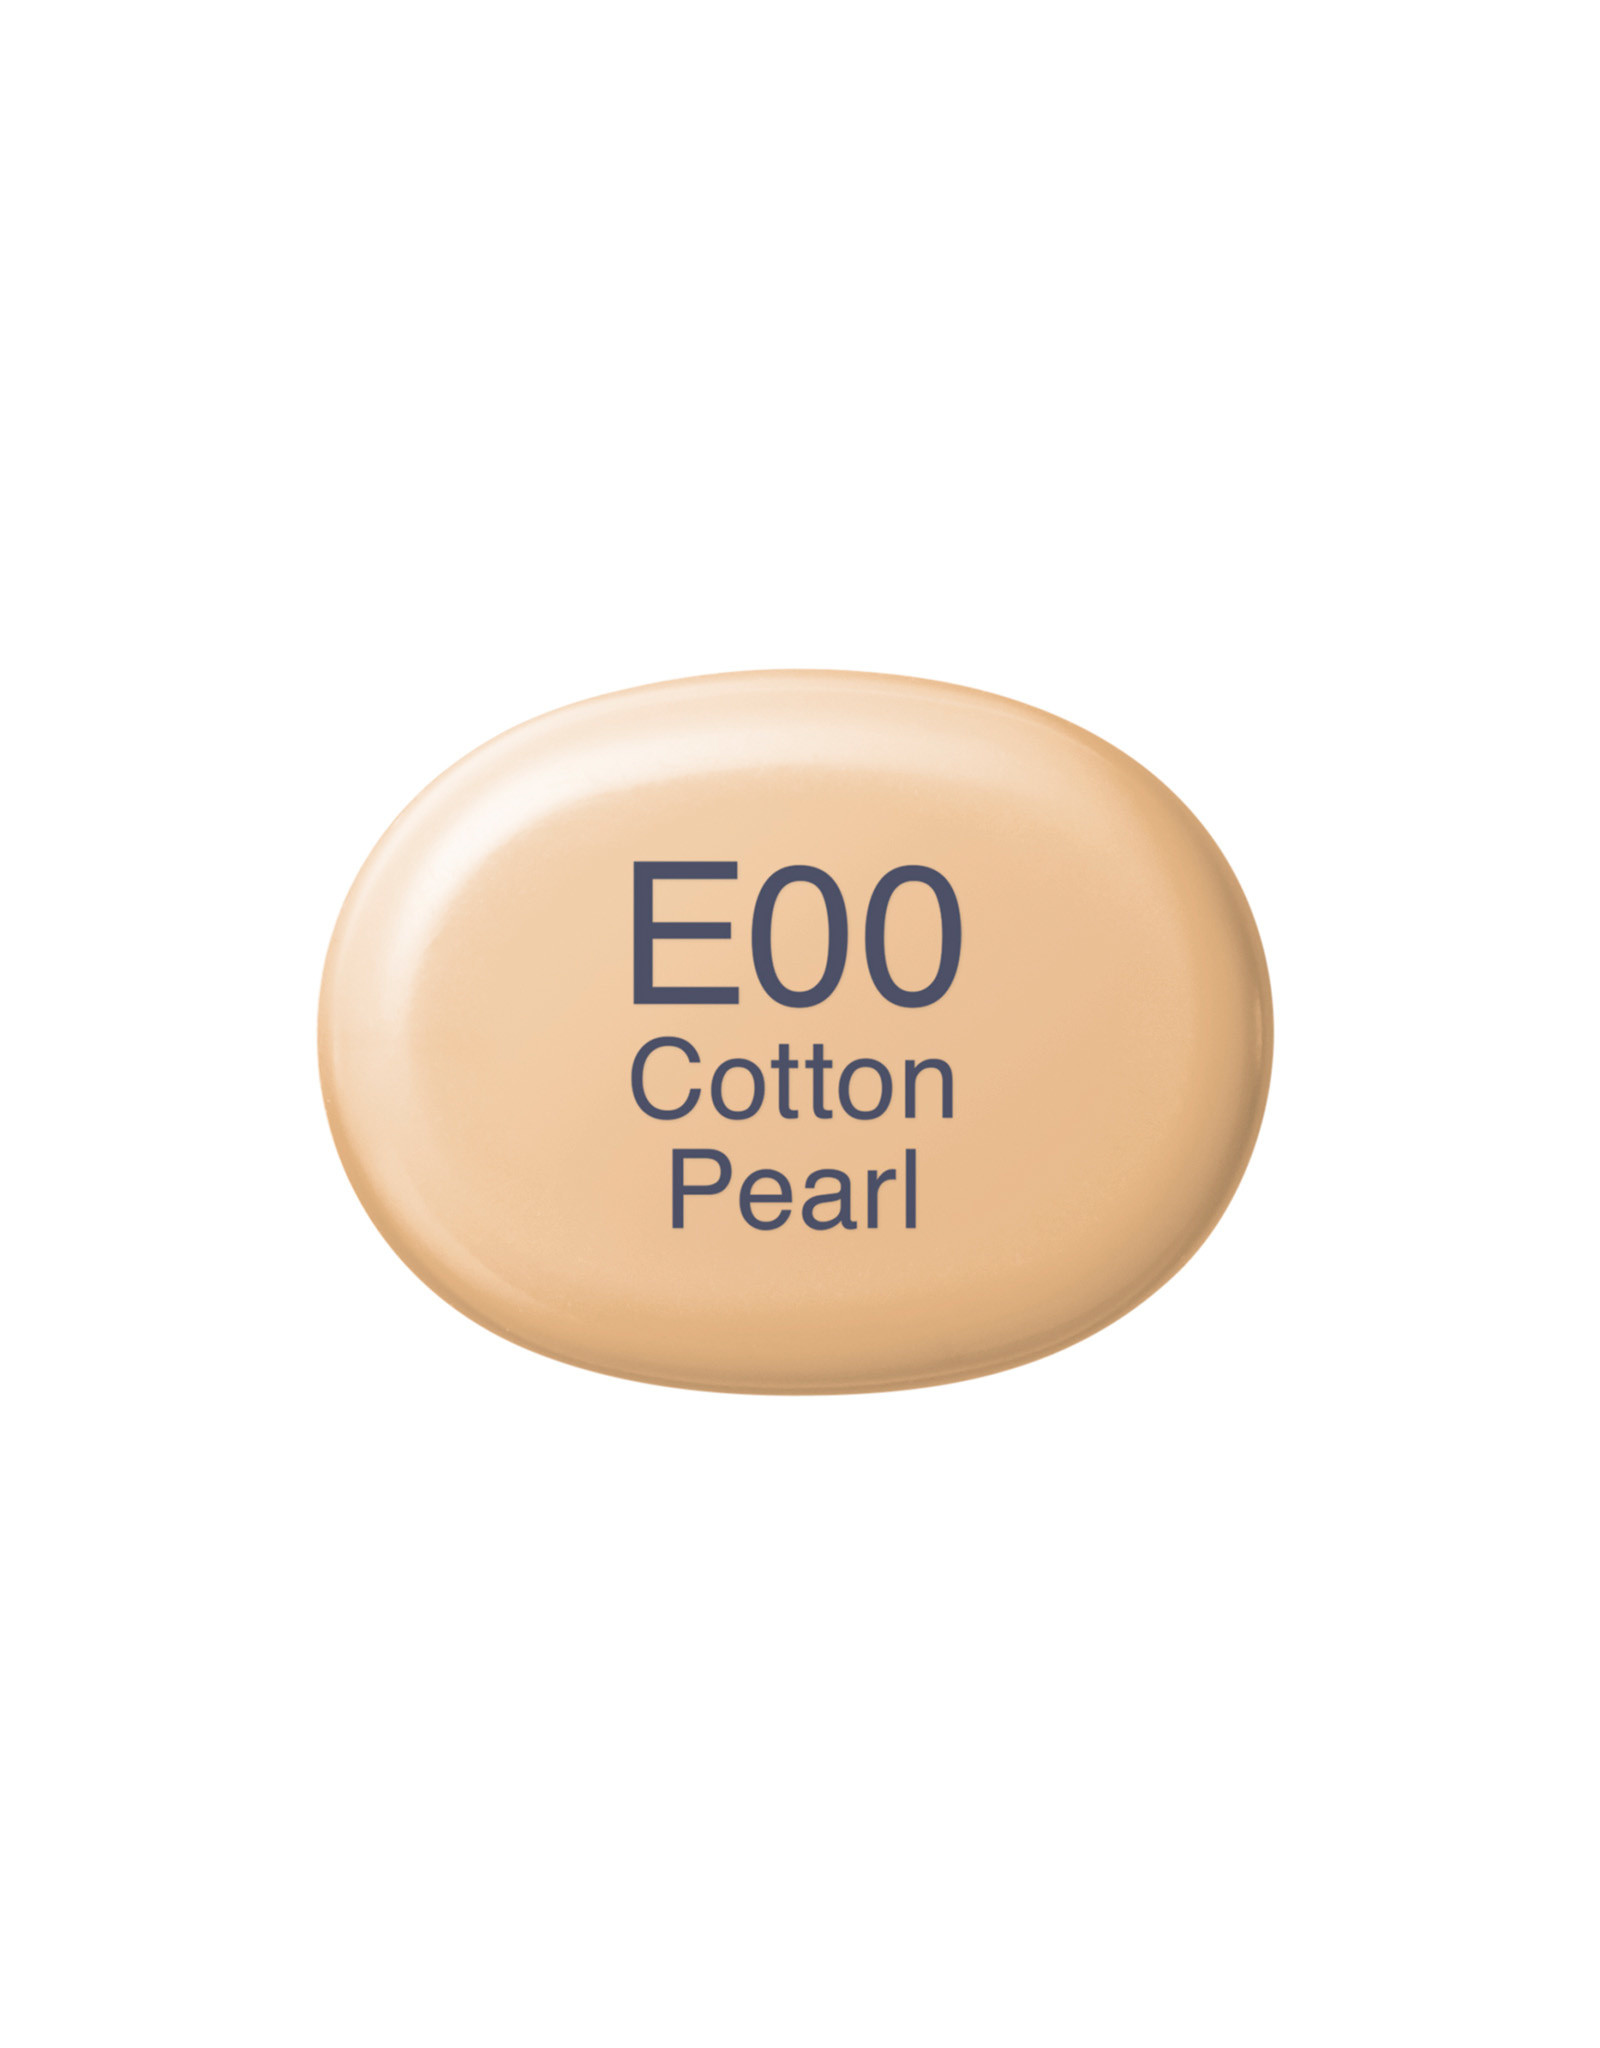 COPIC COPIC Sketch Marker E00 Cotton Pearl